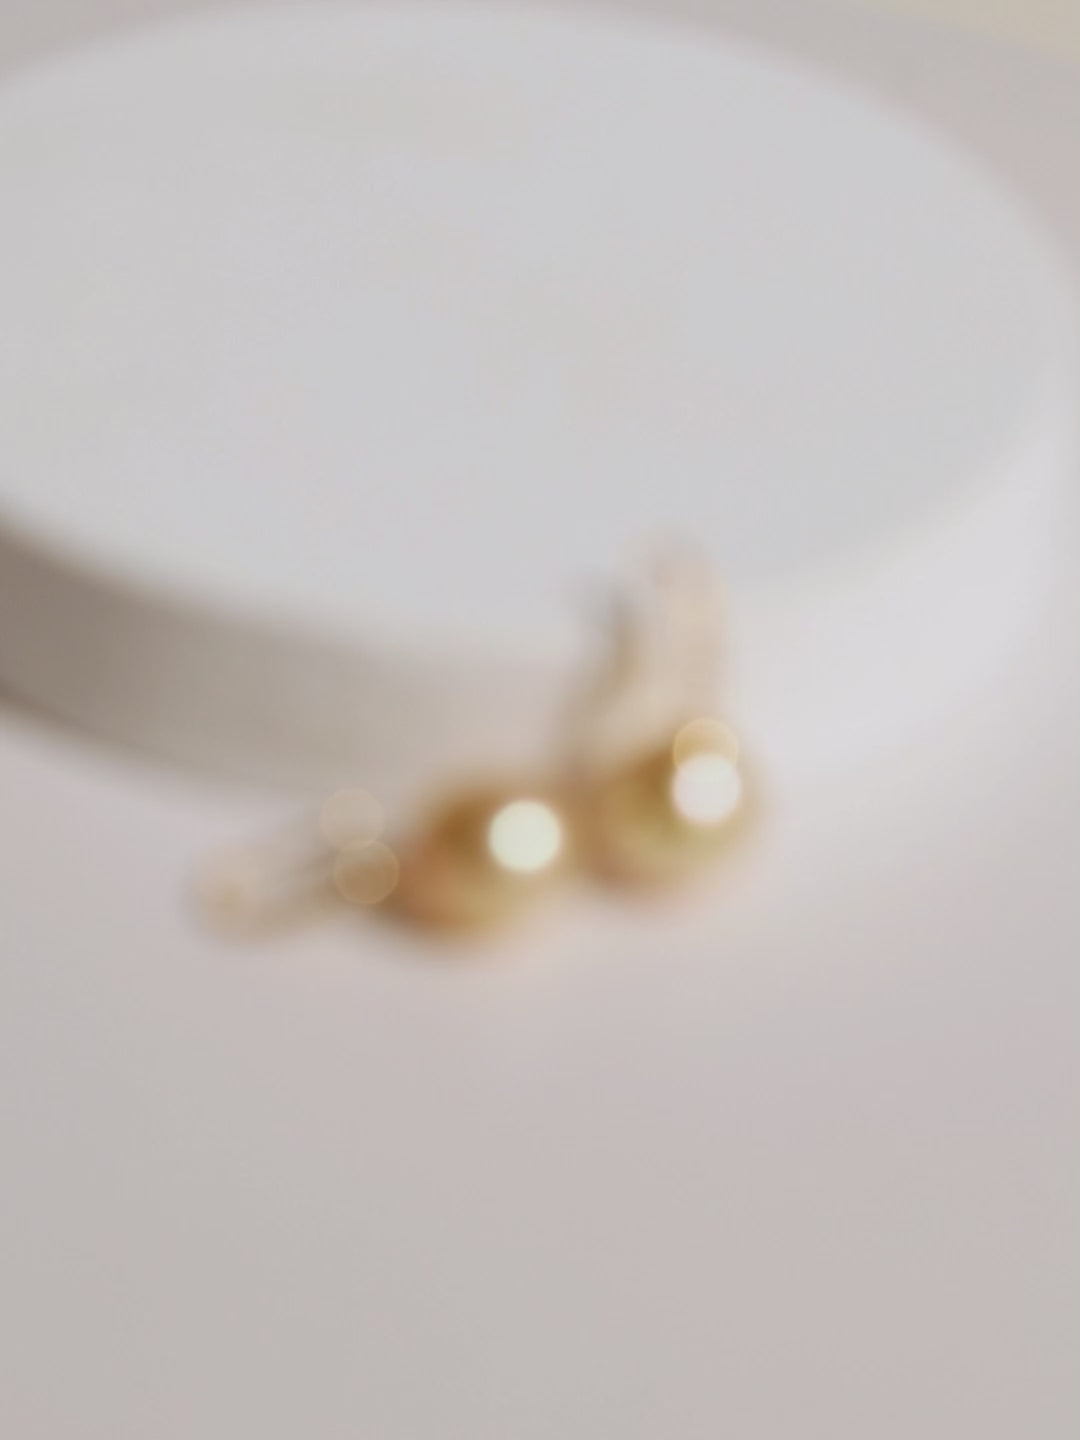 Drop-shaped South Sea Golden Pearl 18K Diamonds French-style Ear Hook Earrings